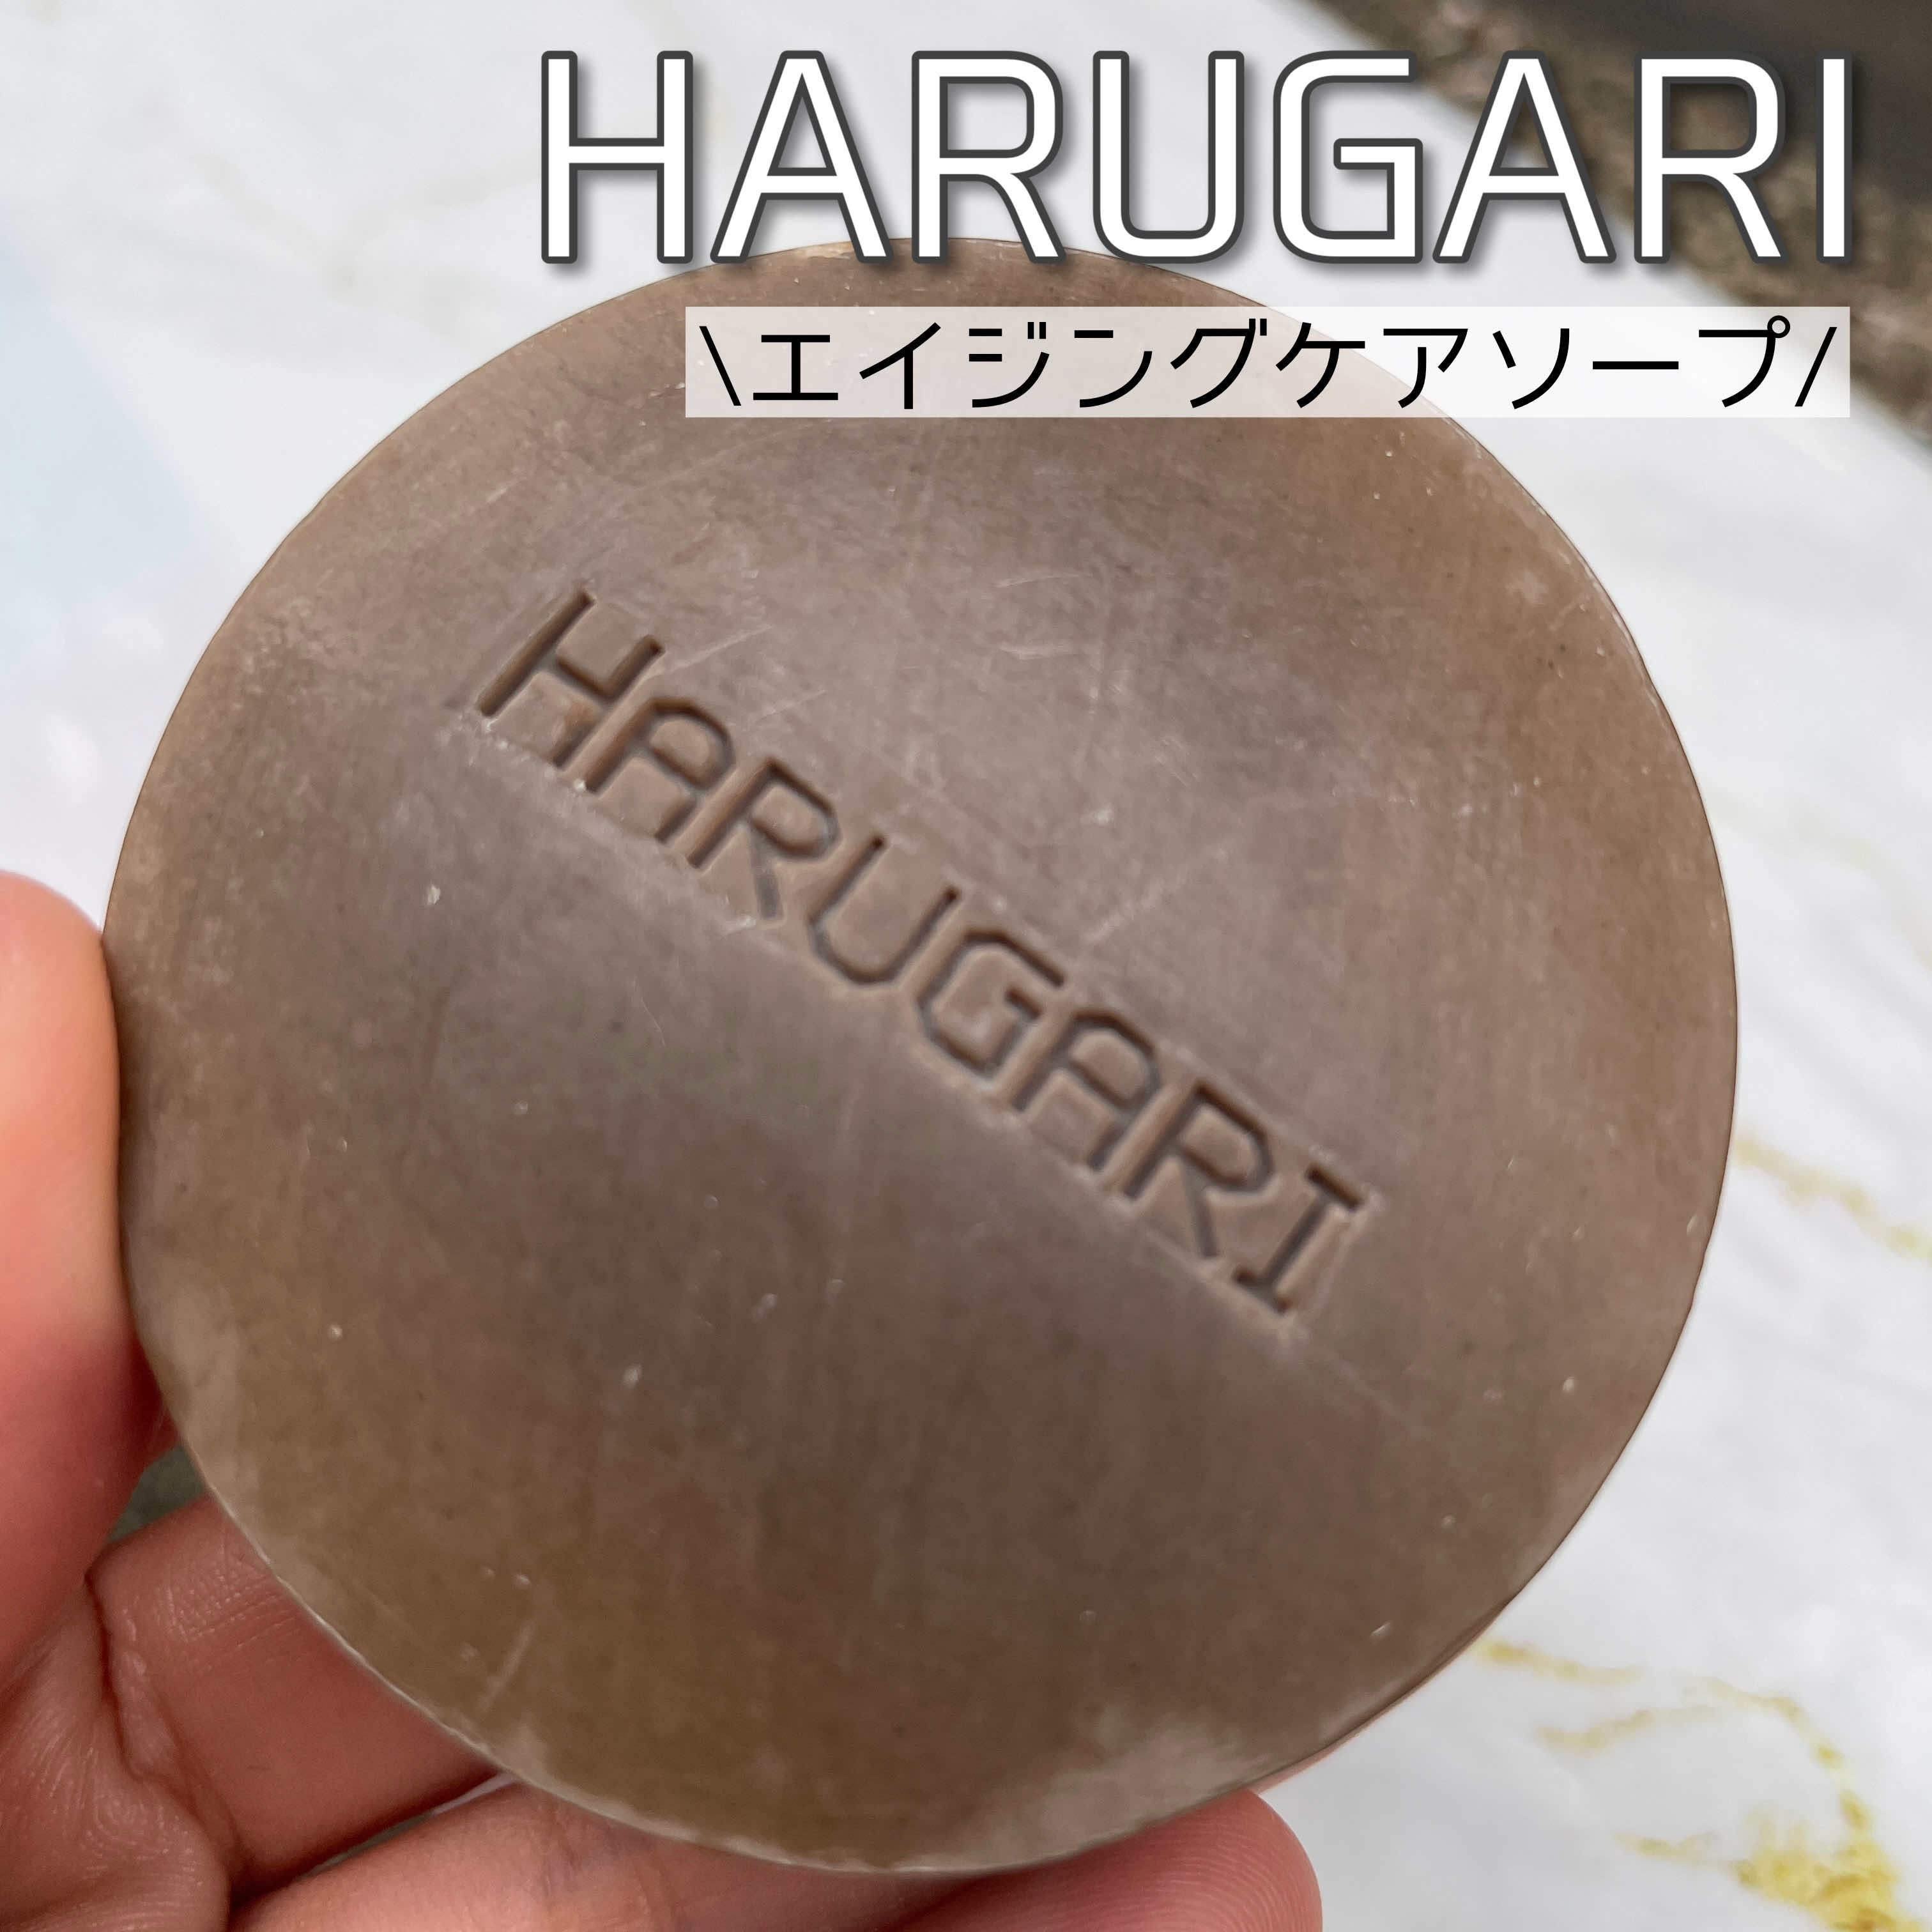 HARUGARI(ハルガリ) ラクトバチルスSP ソープの良い点・メリットに関するなゆさんの口コミ画像1